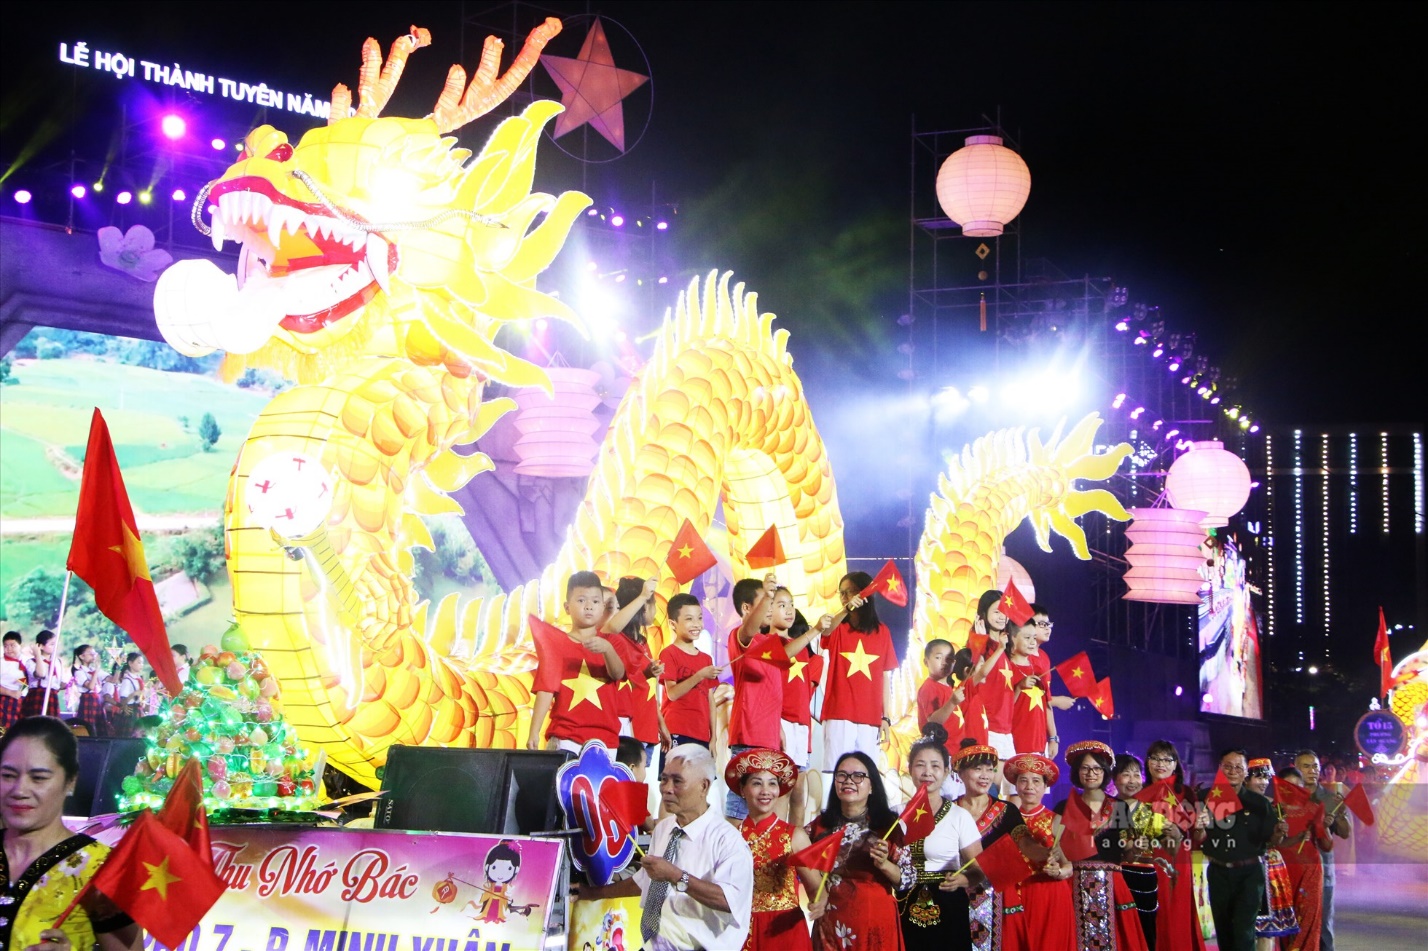 Hôm nay Lễ hội Thành Tuyên chính thức diễn ra - Ảnh 1.